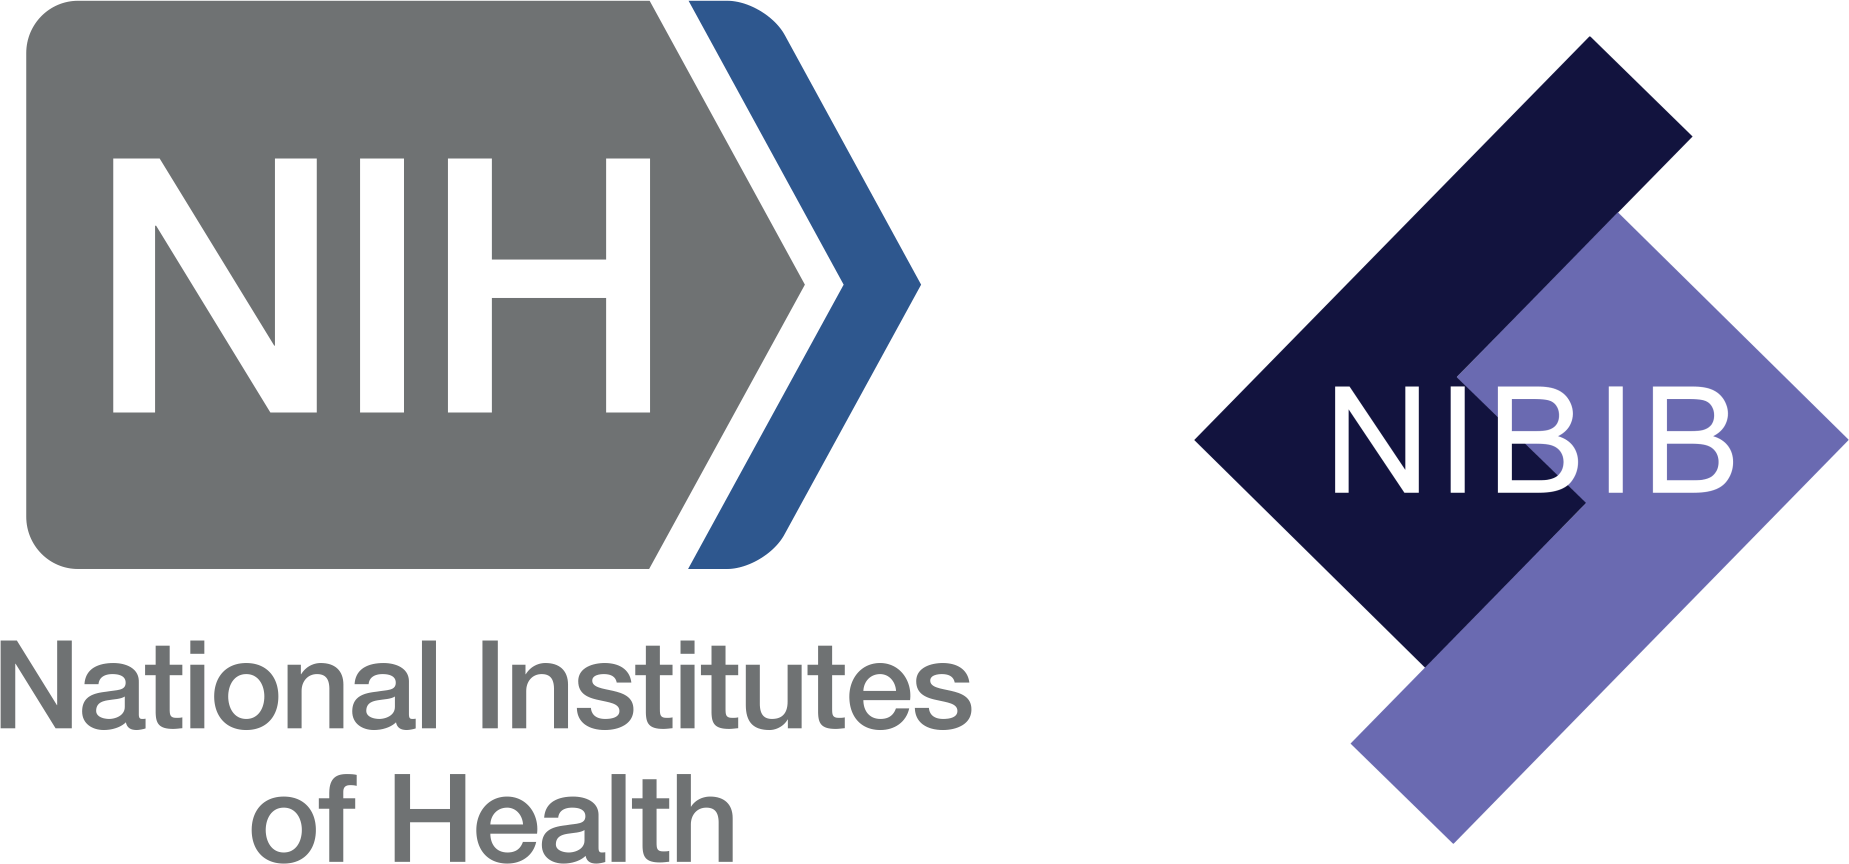 NIH Logo - Nih Logos